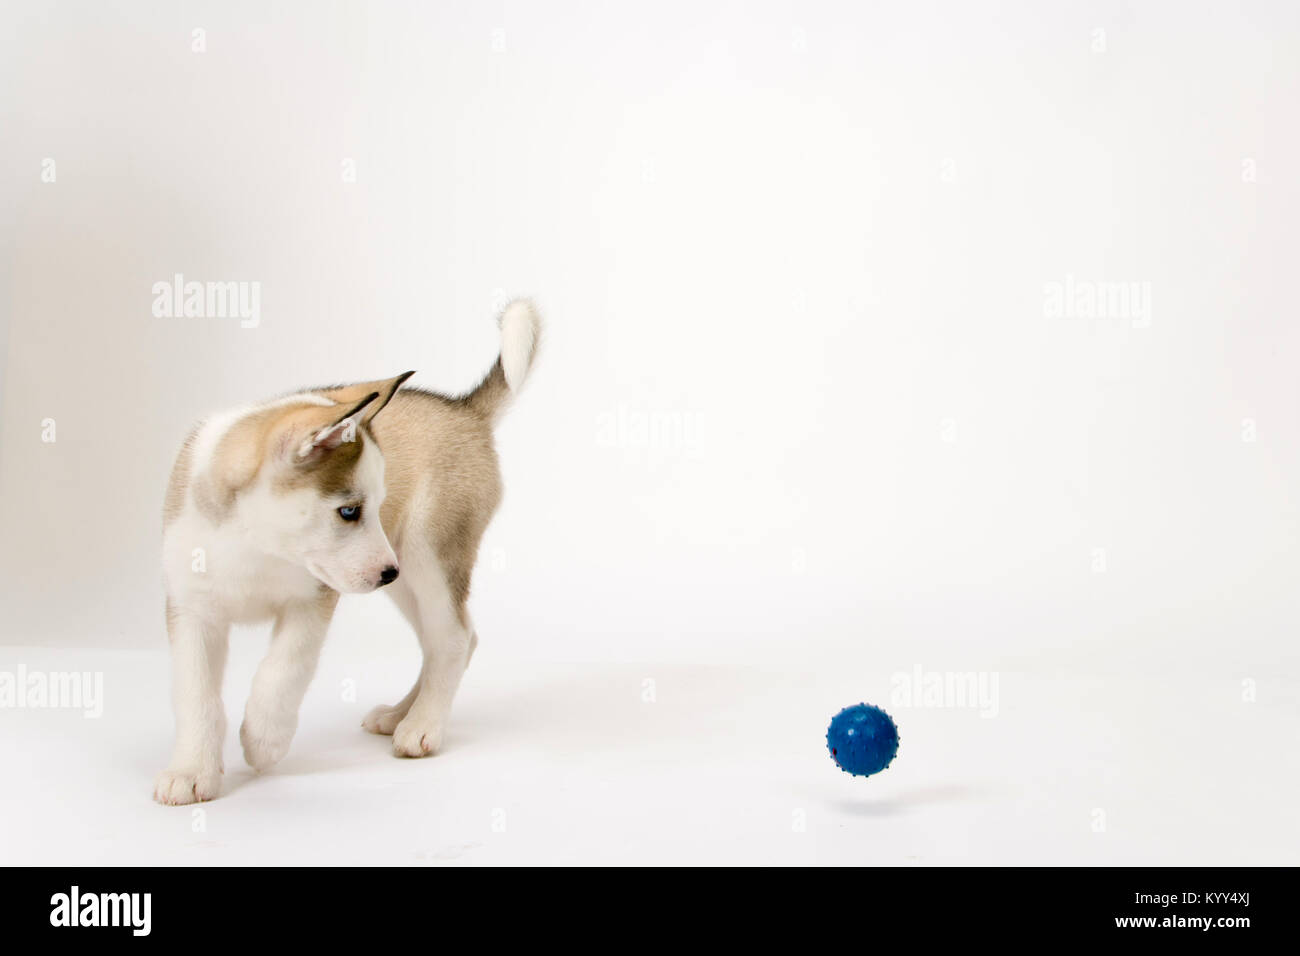 Fluffy jeune chiot Husky montres un ballon sauteur Banque D'Images